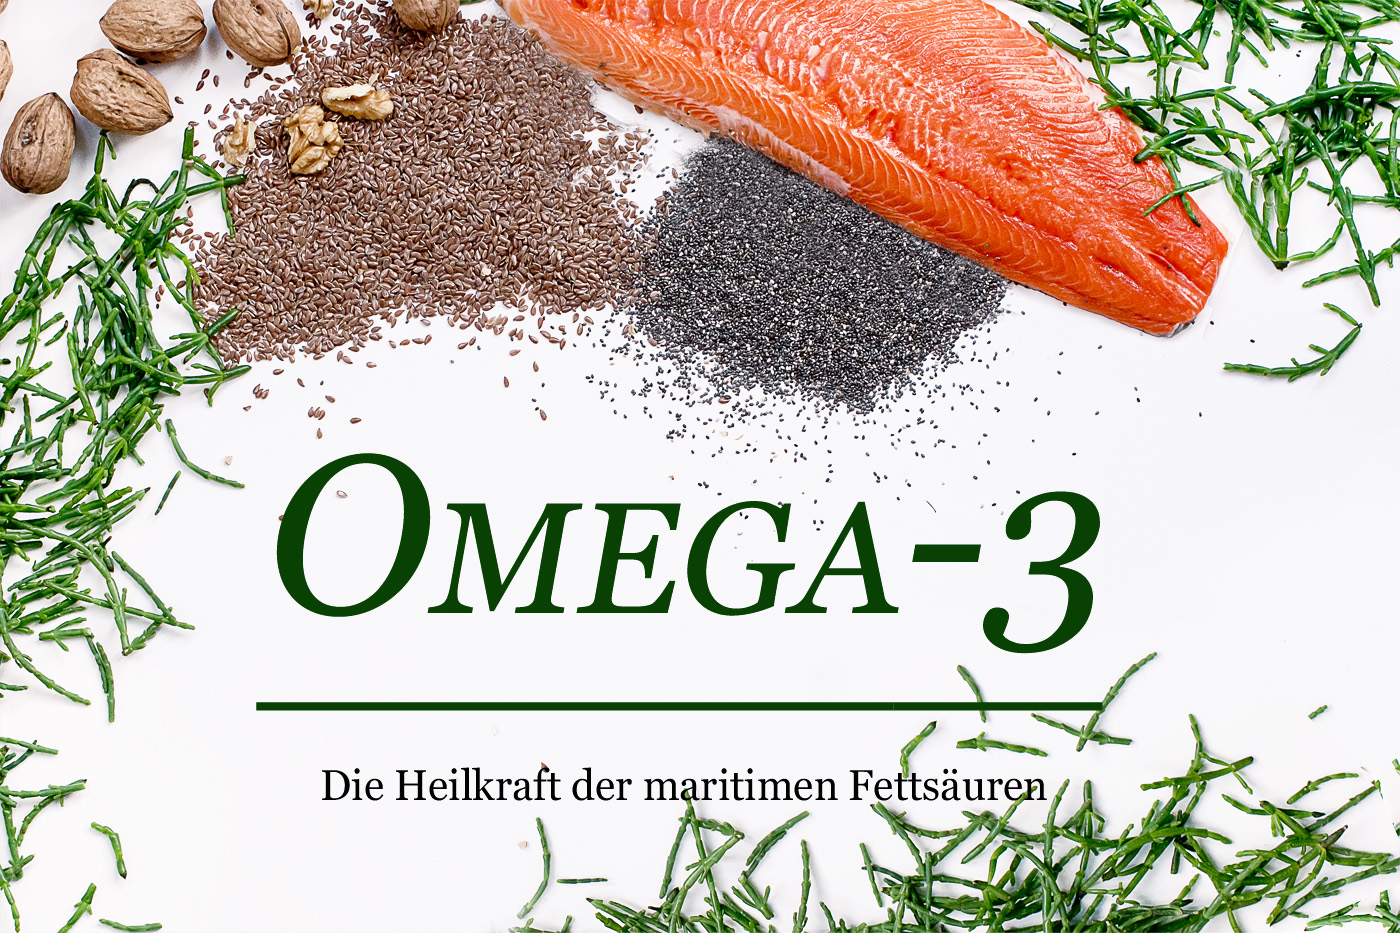 omega-3-fettsäuren-gesundheit-entzündungen-gesunde-ernährung-omega-3-index-lifestyleblog